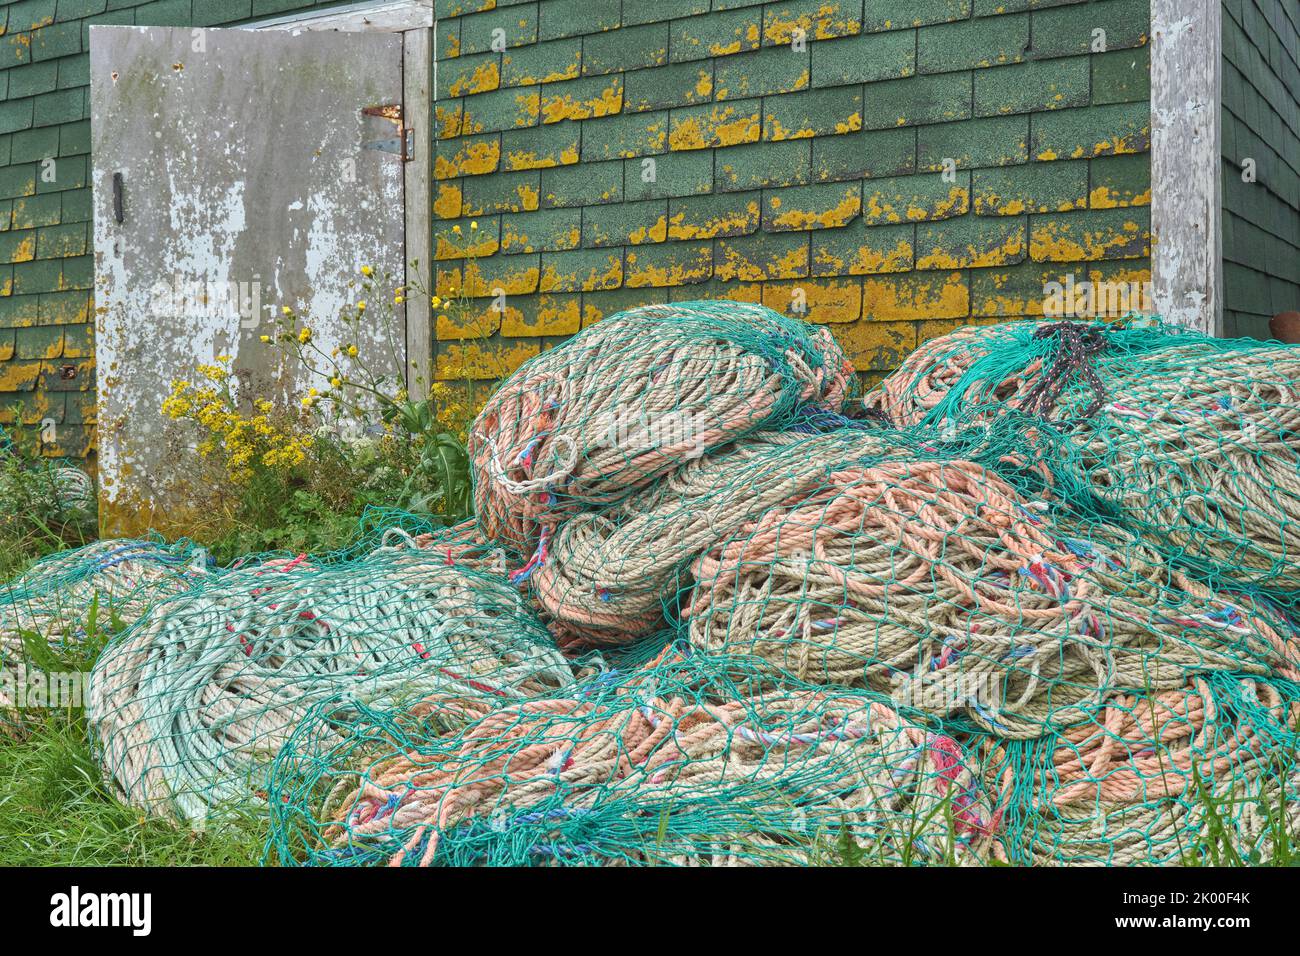 Bobinas de cuerda usadas en la industria pesquera de langosta amontonadas fuera de una cabaña de peces en Sandford Wharf Nueva Escocia. Foto de stock